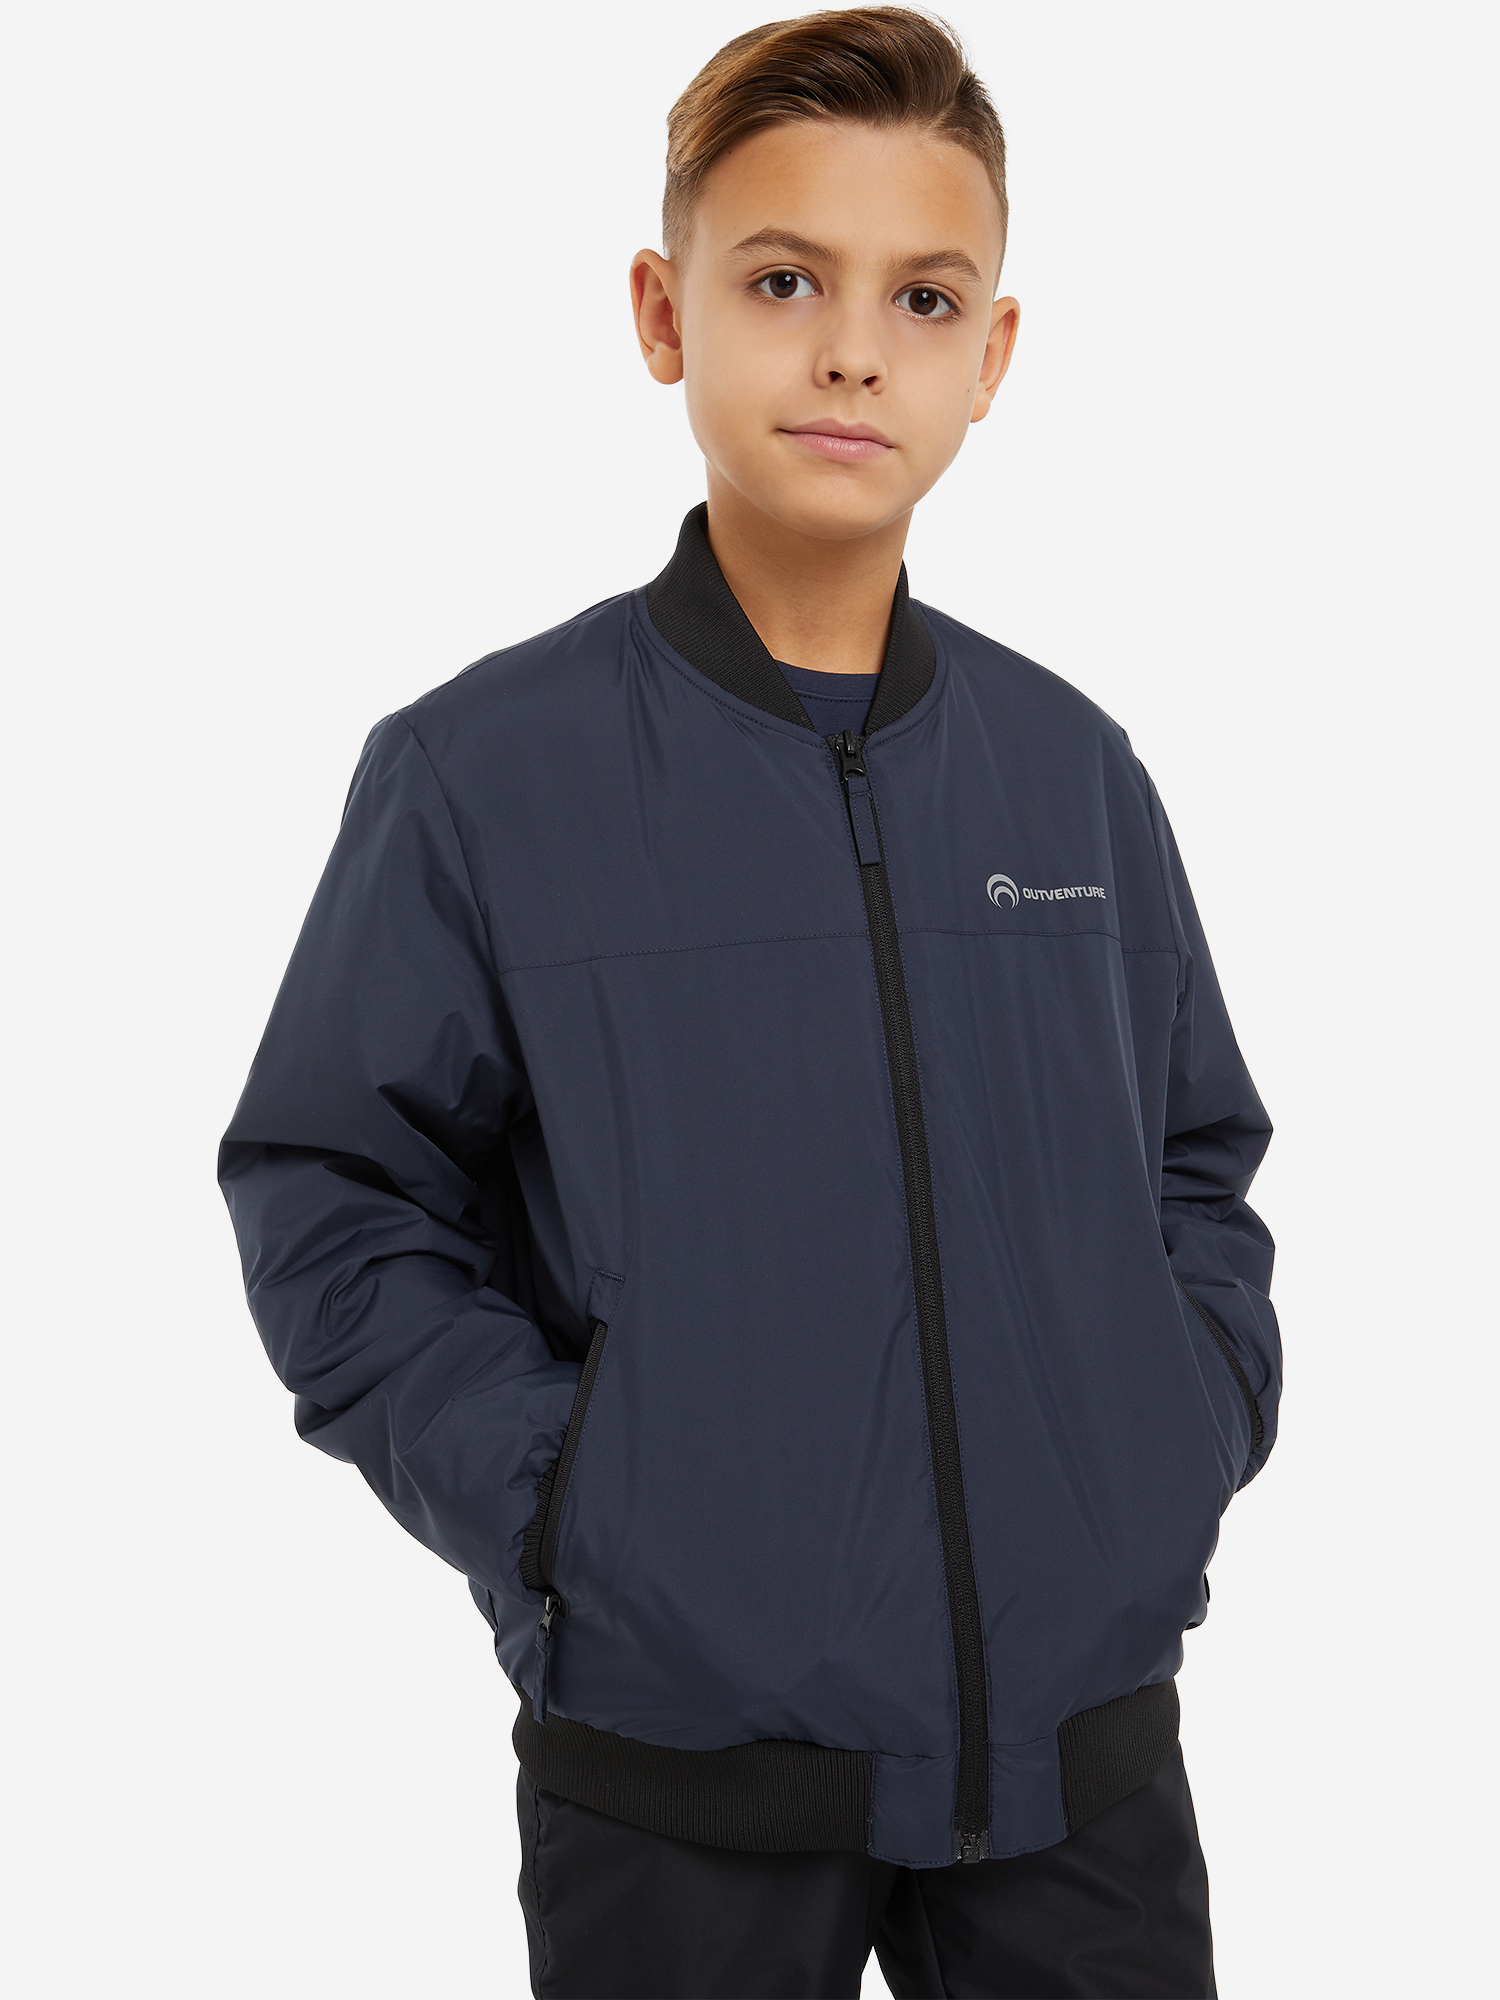 Куртка для мальчиков Outventure черничный цвет — купить за 85 руб. в интернет-магазине Спортмастер